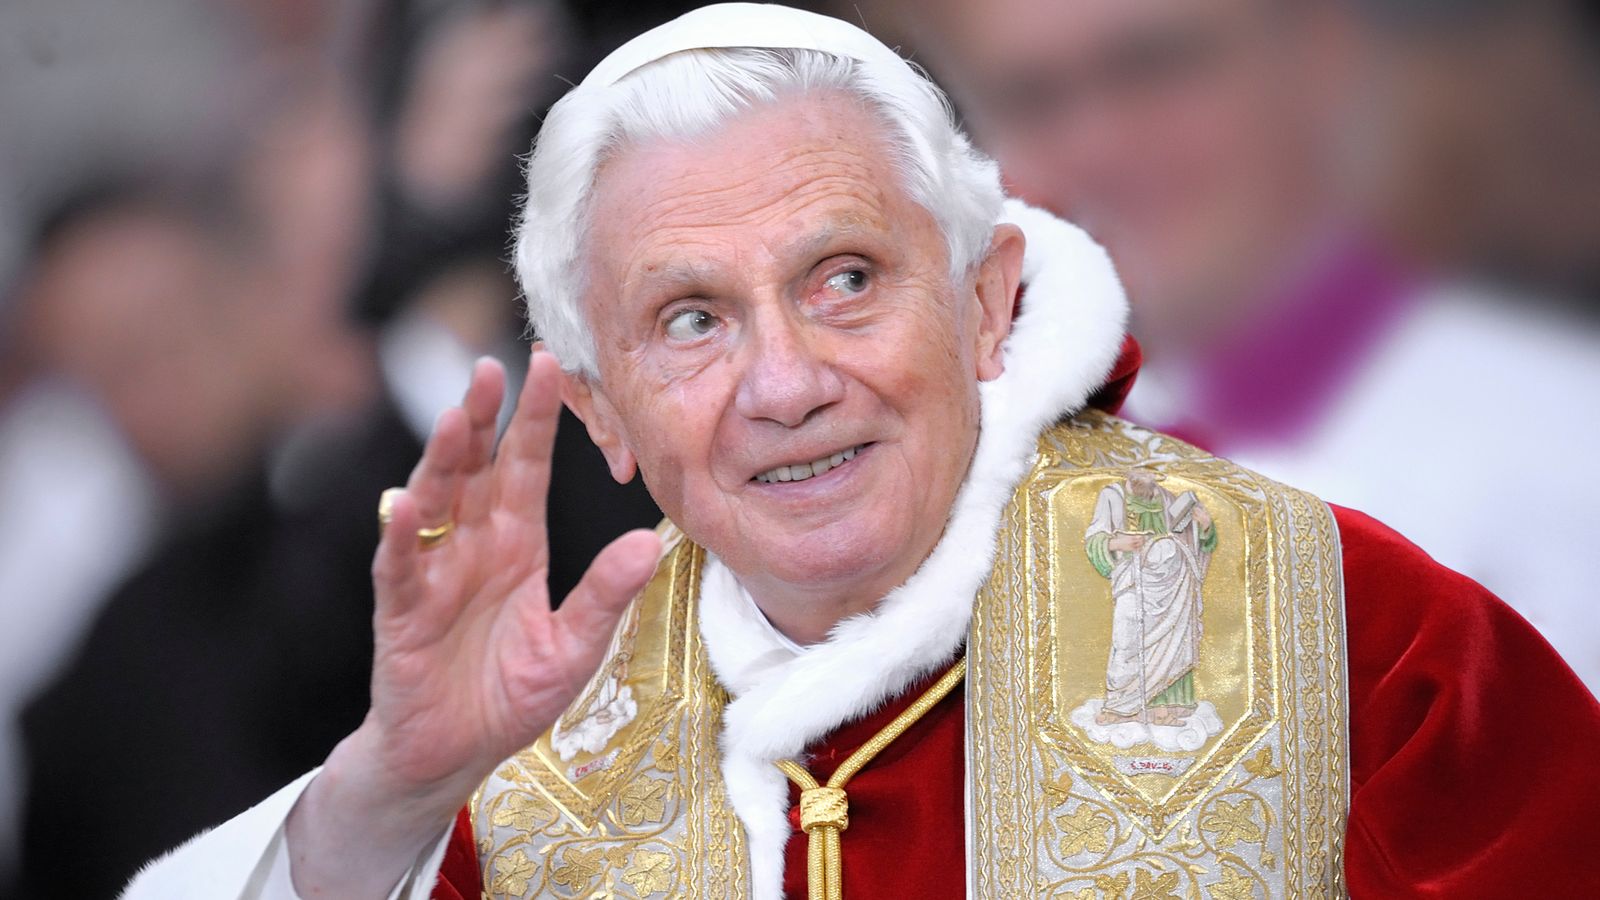 La mort de l’ancien pape Benoît XVI, le premier à démissionner depuis des siècles, à l’âge de 95 ans |  nouvelles du monde